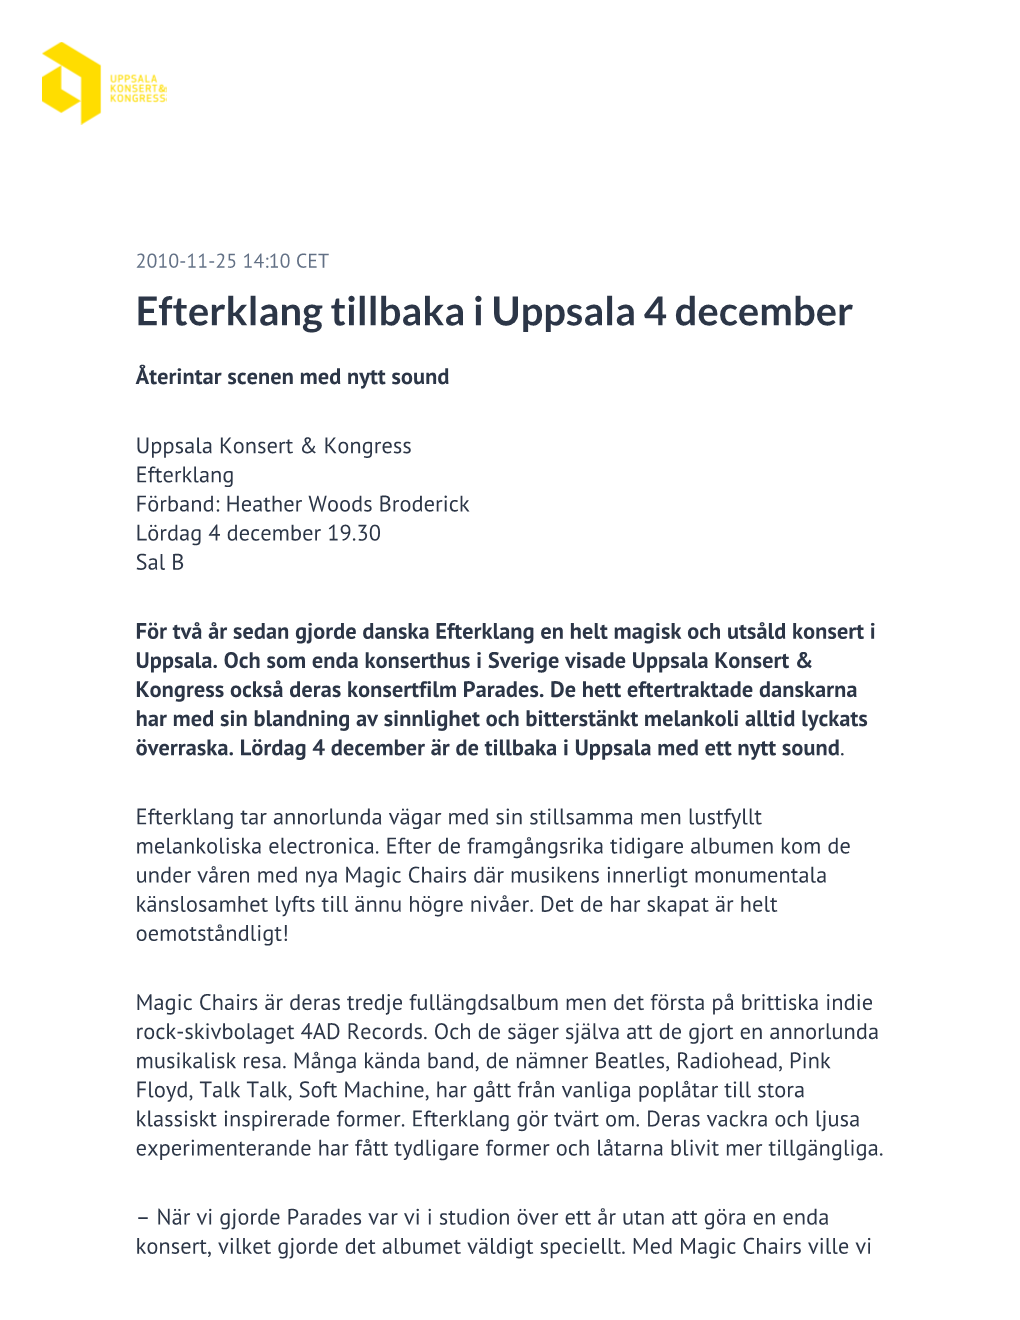 Efterklang Tillbaka I Uppsala 4 December